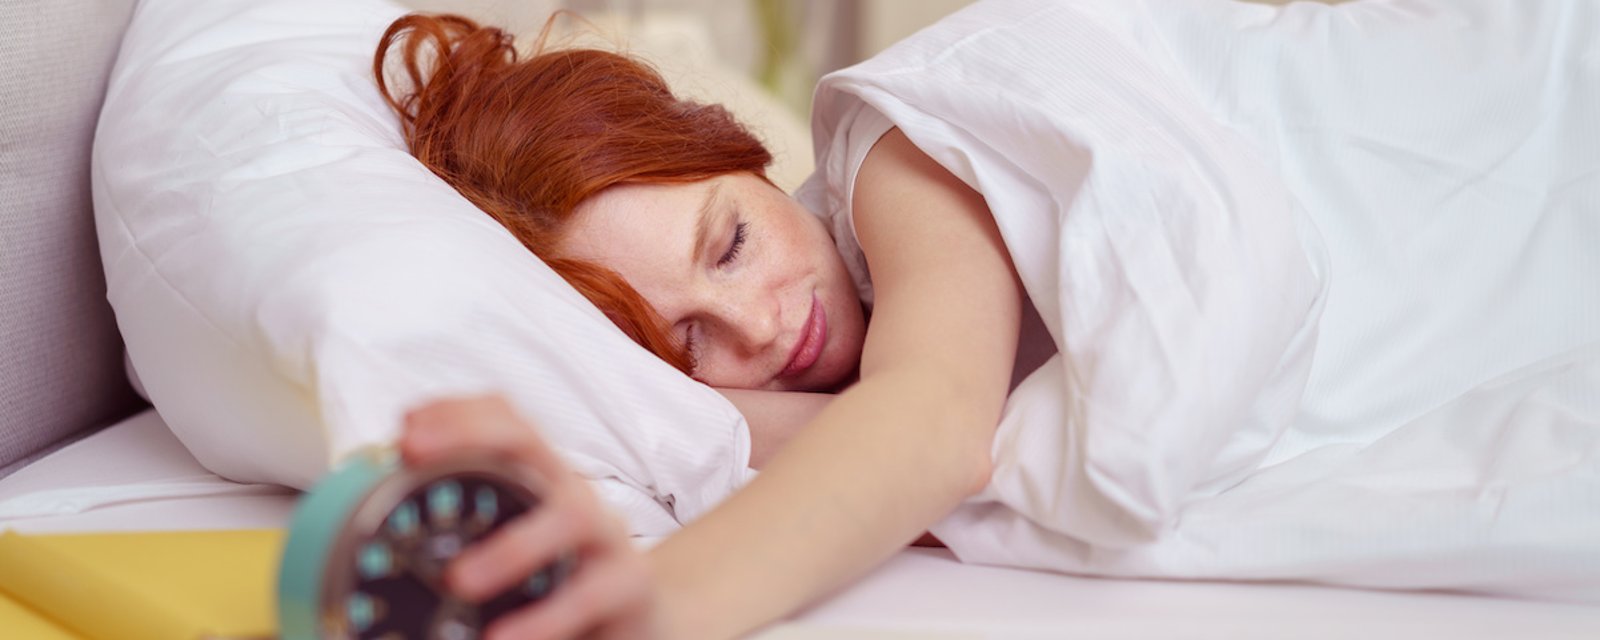 Si vous vous rendormez après que votre réveil ait sonné, vous êtes plus intelligent que la moyenne, selon une étude